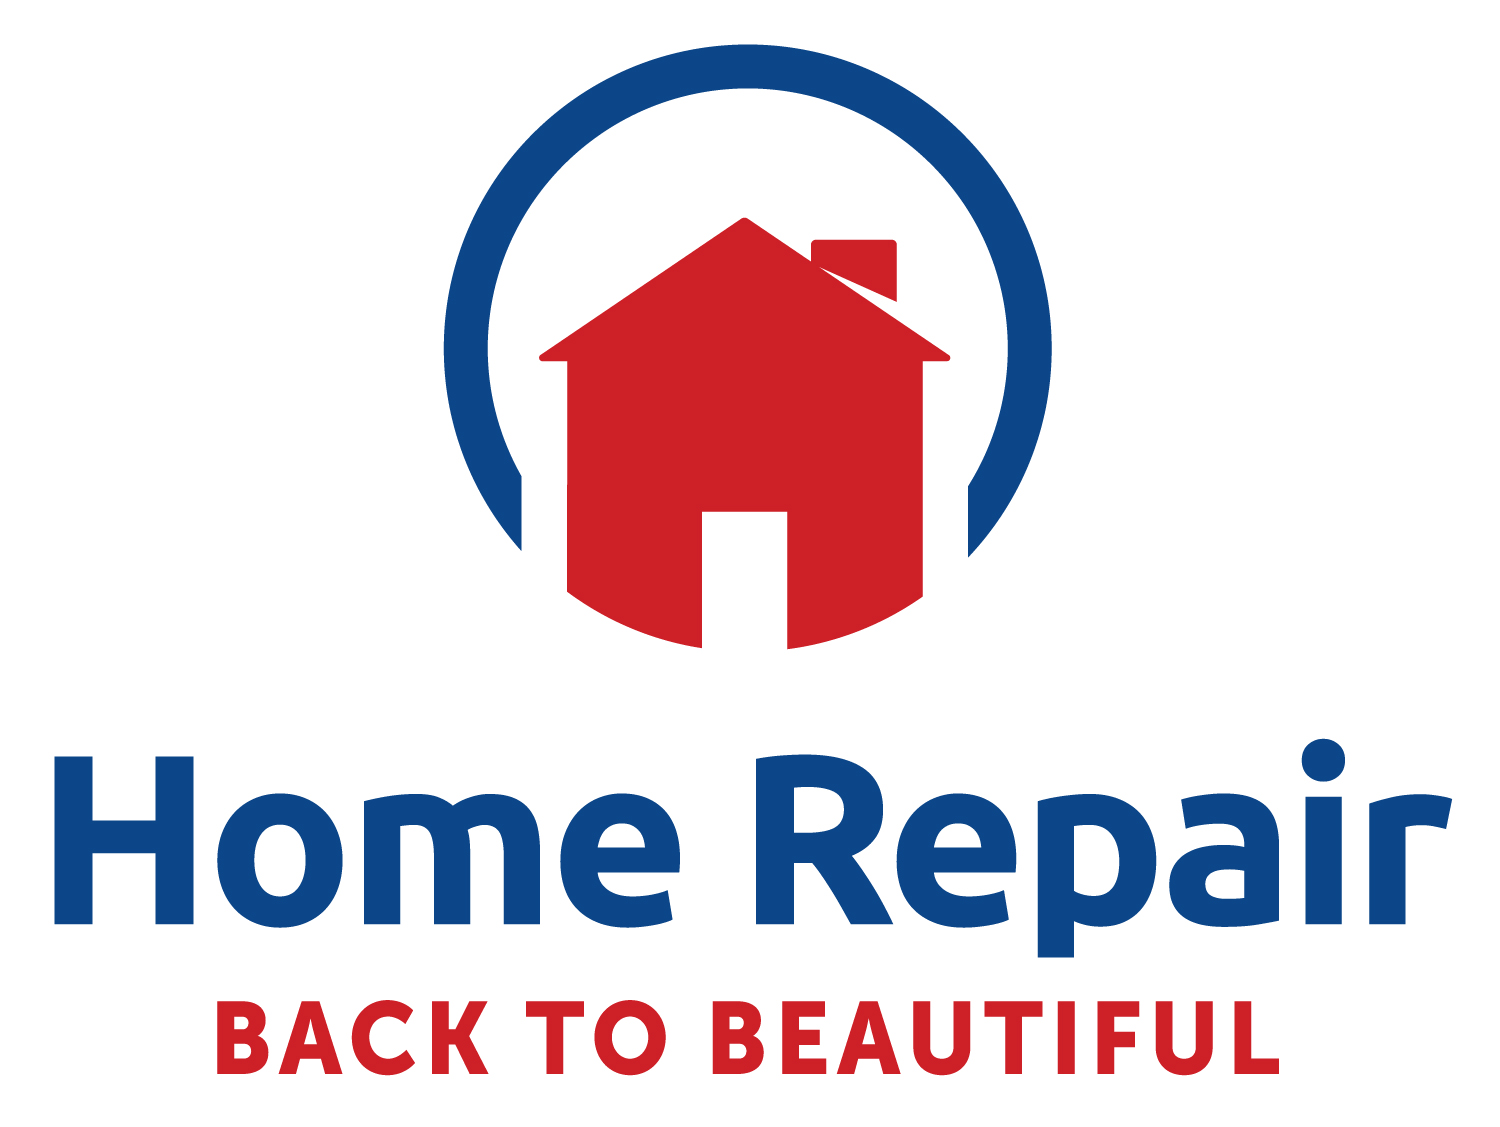 www.HomeRepair.com